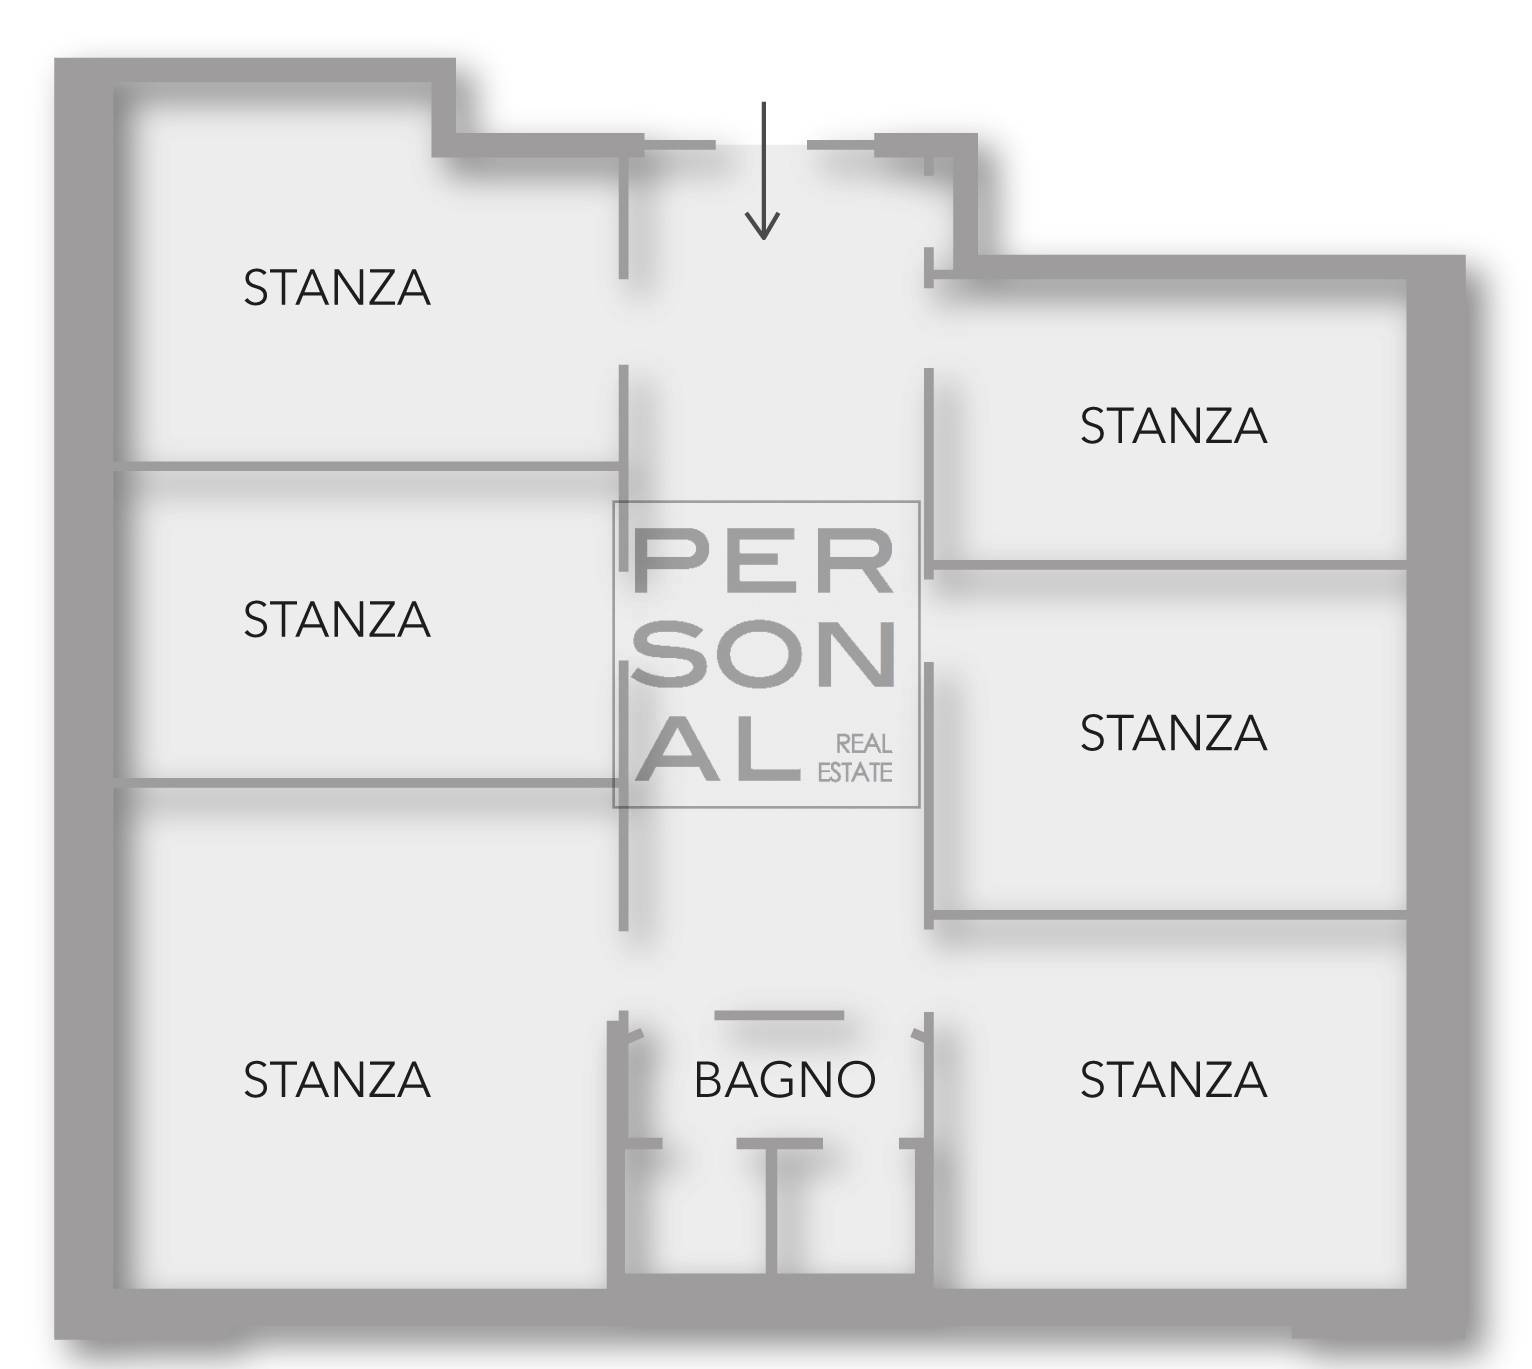 Ufficio / Studio in vendita a Trento, 9999 locali, zona Zona: Cristore, prezzo € 340.000 | CambioCasa.it